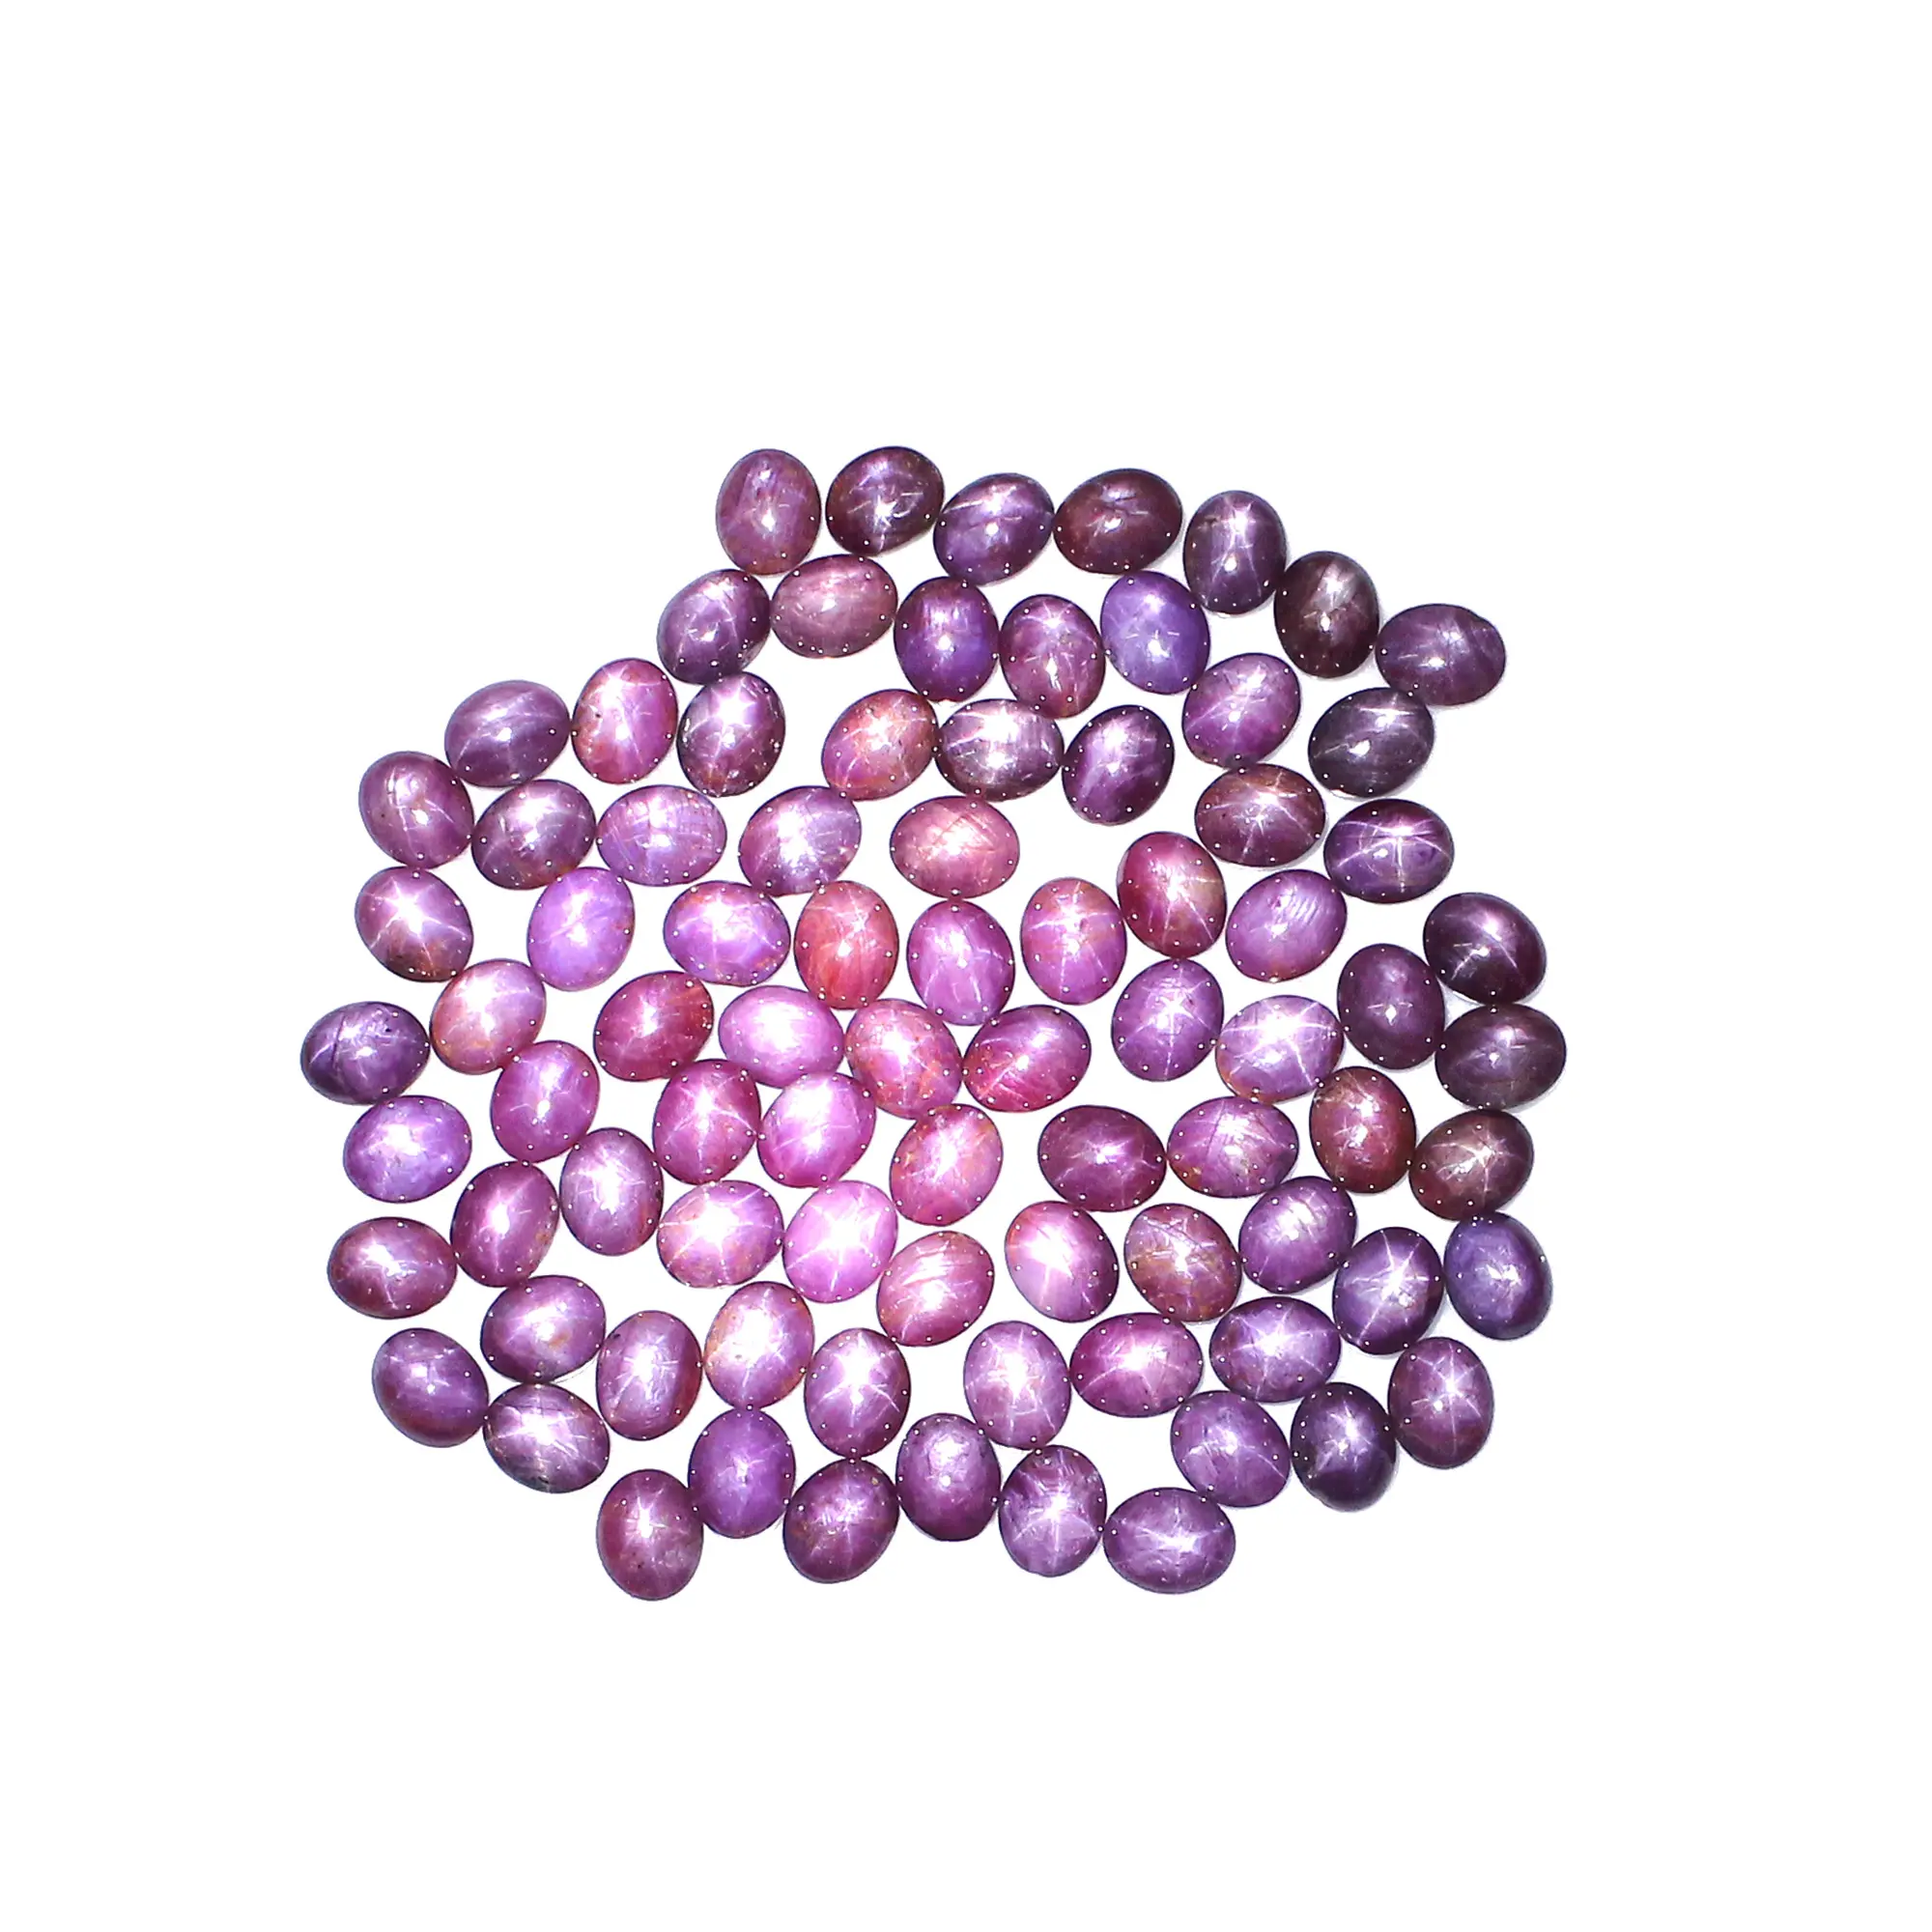 Natural Star Ruby 10X8Mm Oval Cabochon Batu Permata Longgar 5 Buah Lot untuk Membuat Perhiasan Seluruh Harga Jual